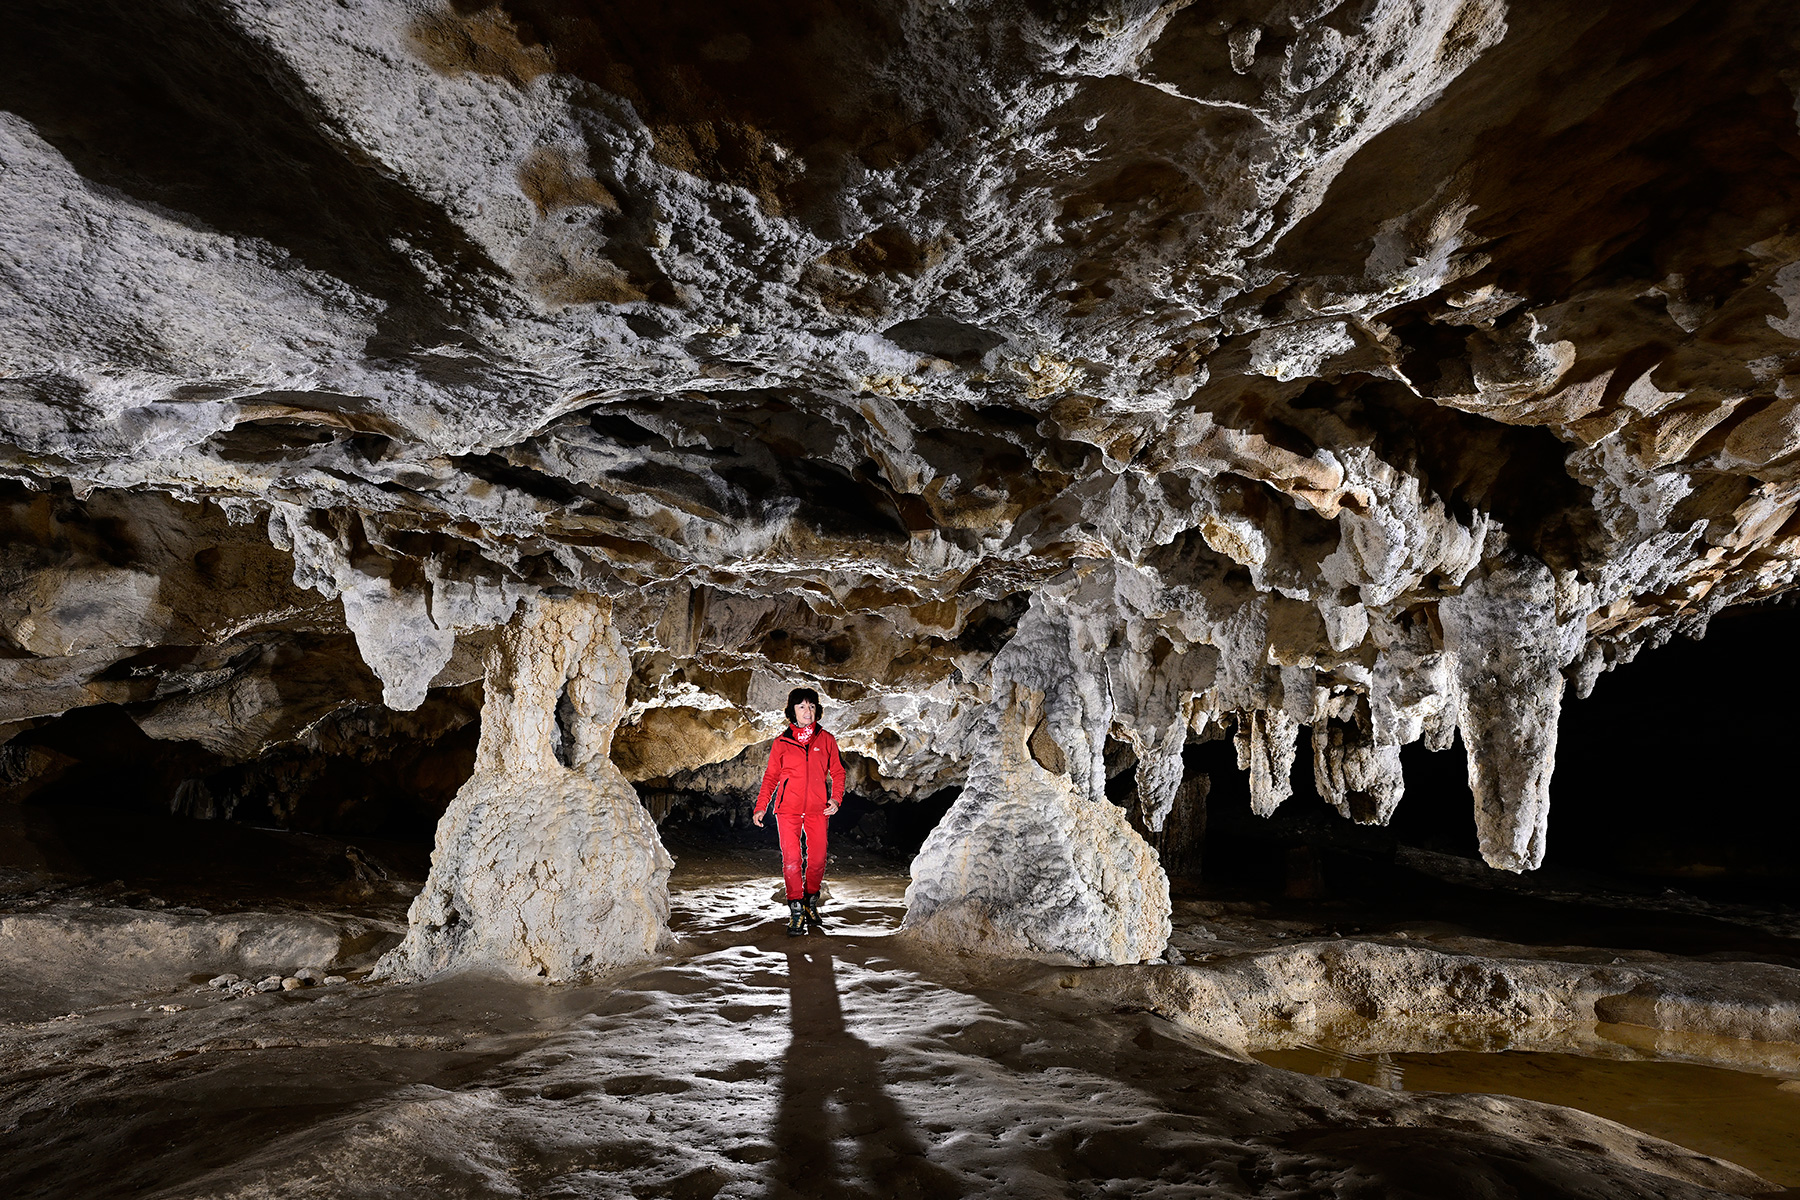 Grotte préhistorique de Bédeilhac (Ariège) - Passage entre deux petits piliers stalagmitiques ("les jumelles")